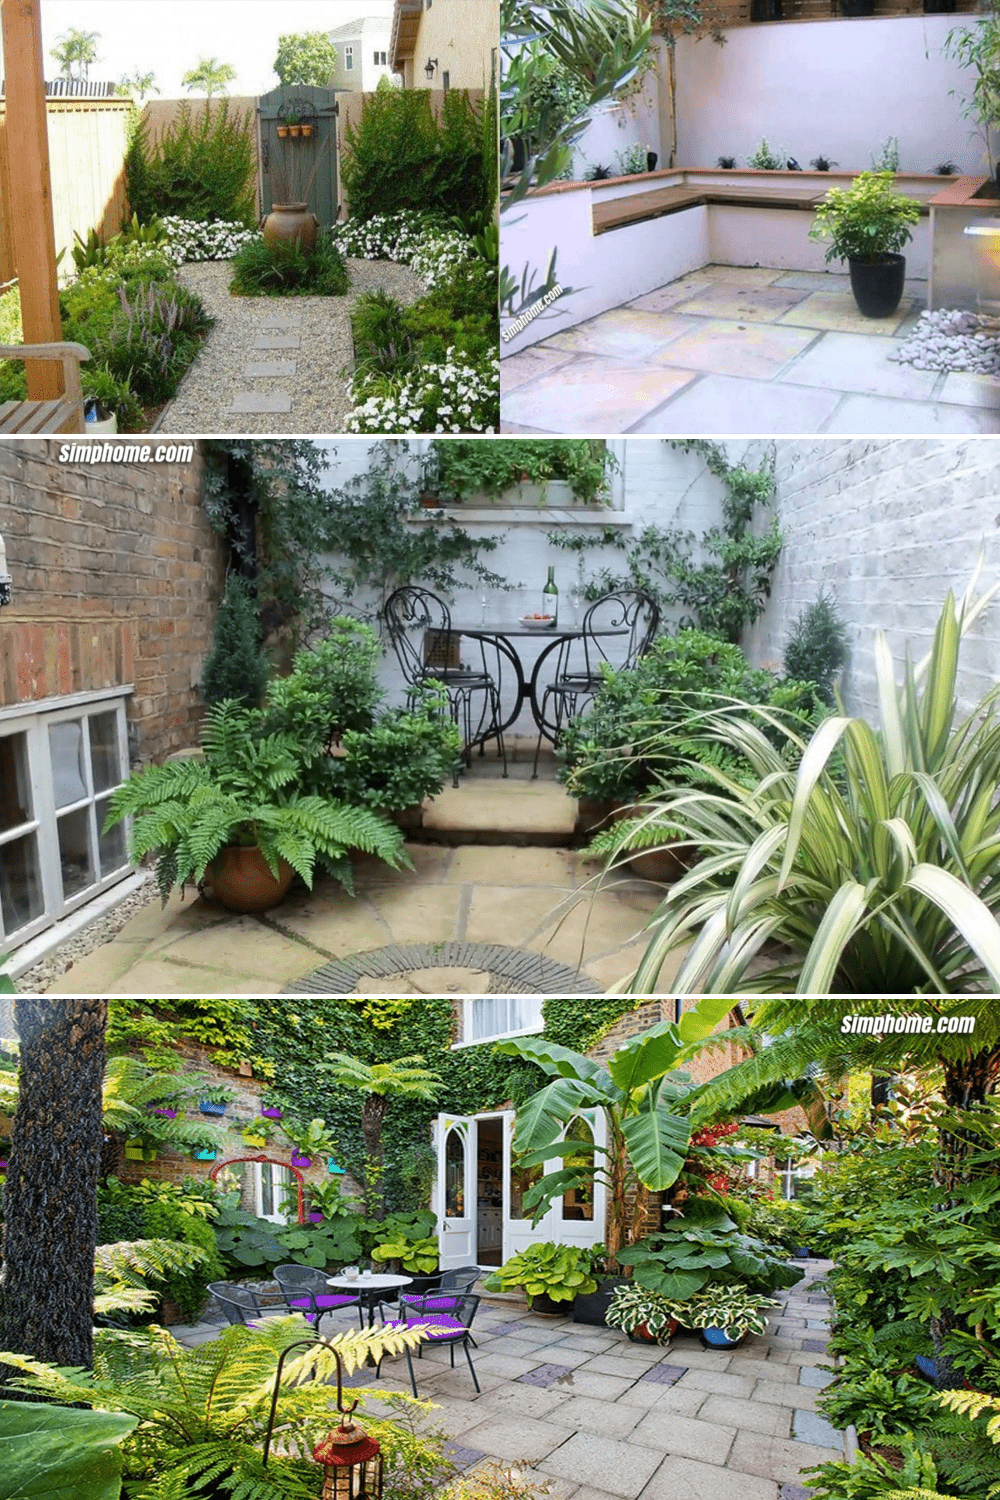 Simphome.com Small courtyard garden ideas